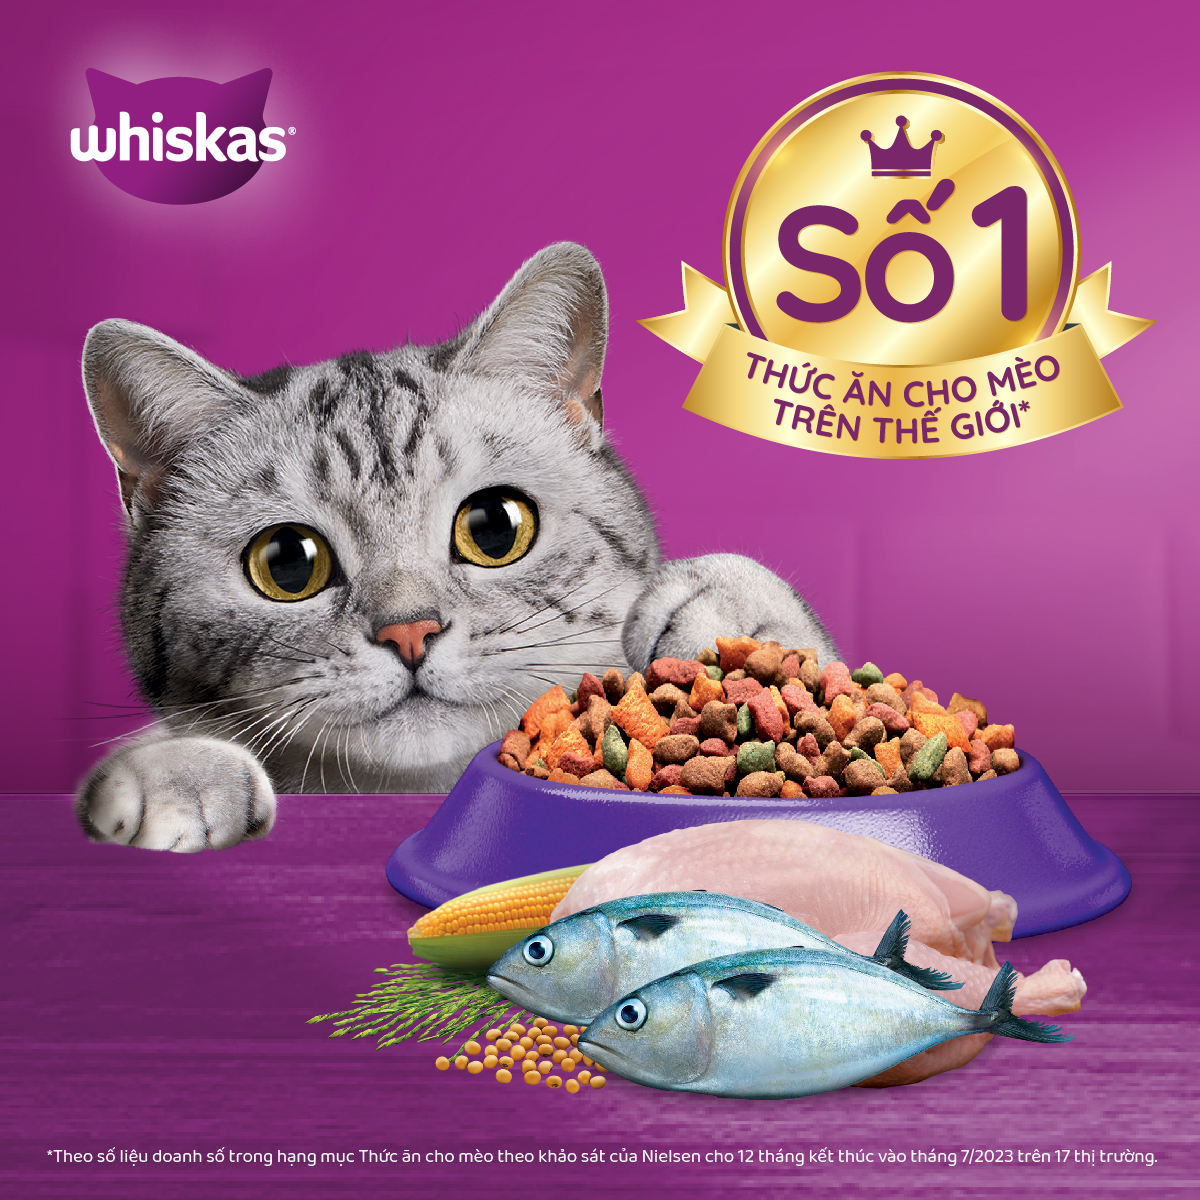 Thức Ăn Cho Mèo Whiskas Adult 1+ YearsVị Cá Thu 1.2kg/Túi